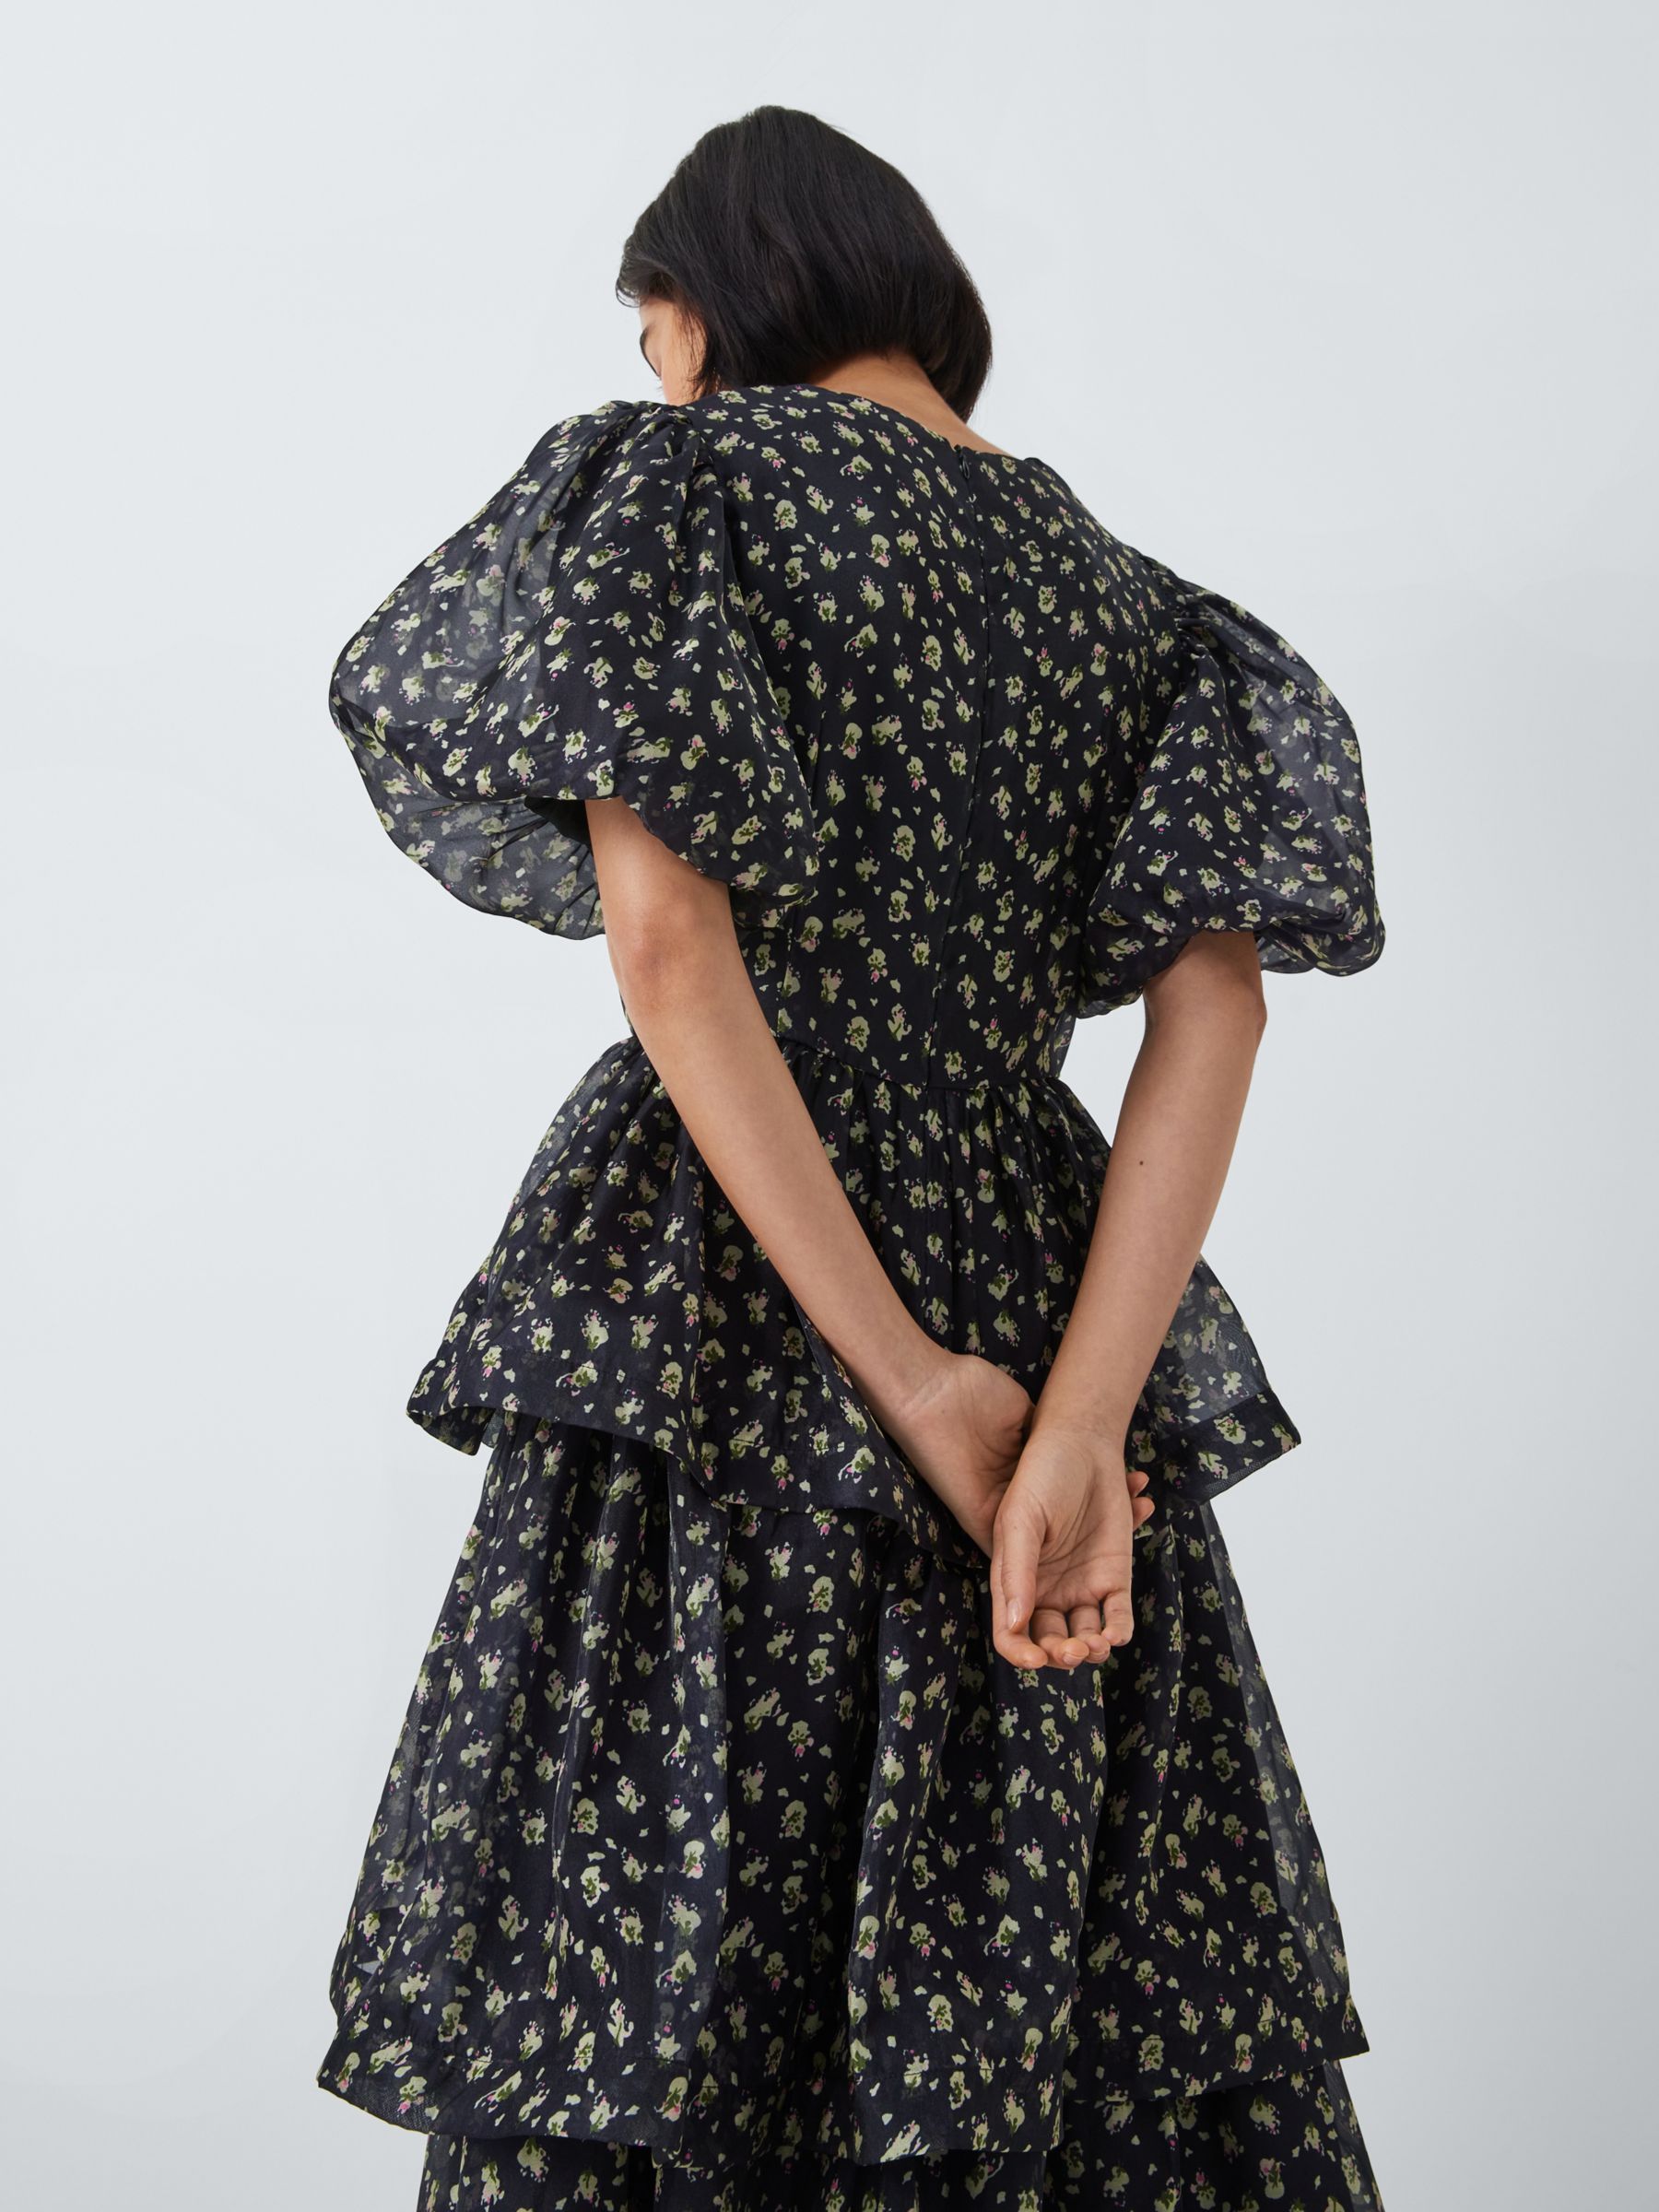 Buy Sister Jane Noon Floral Print Tiered Midi Dress, Black Online at johnlewis.com